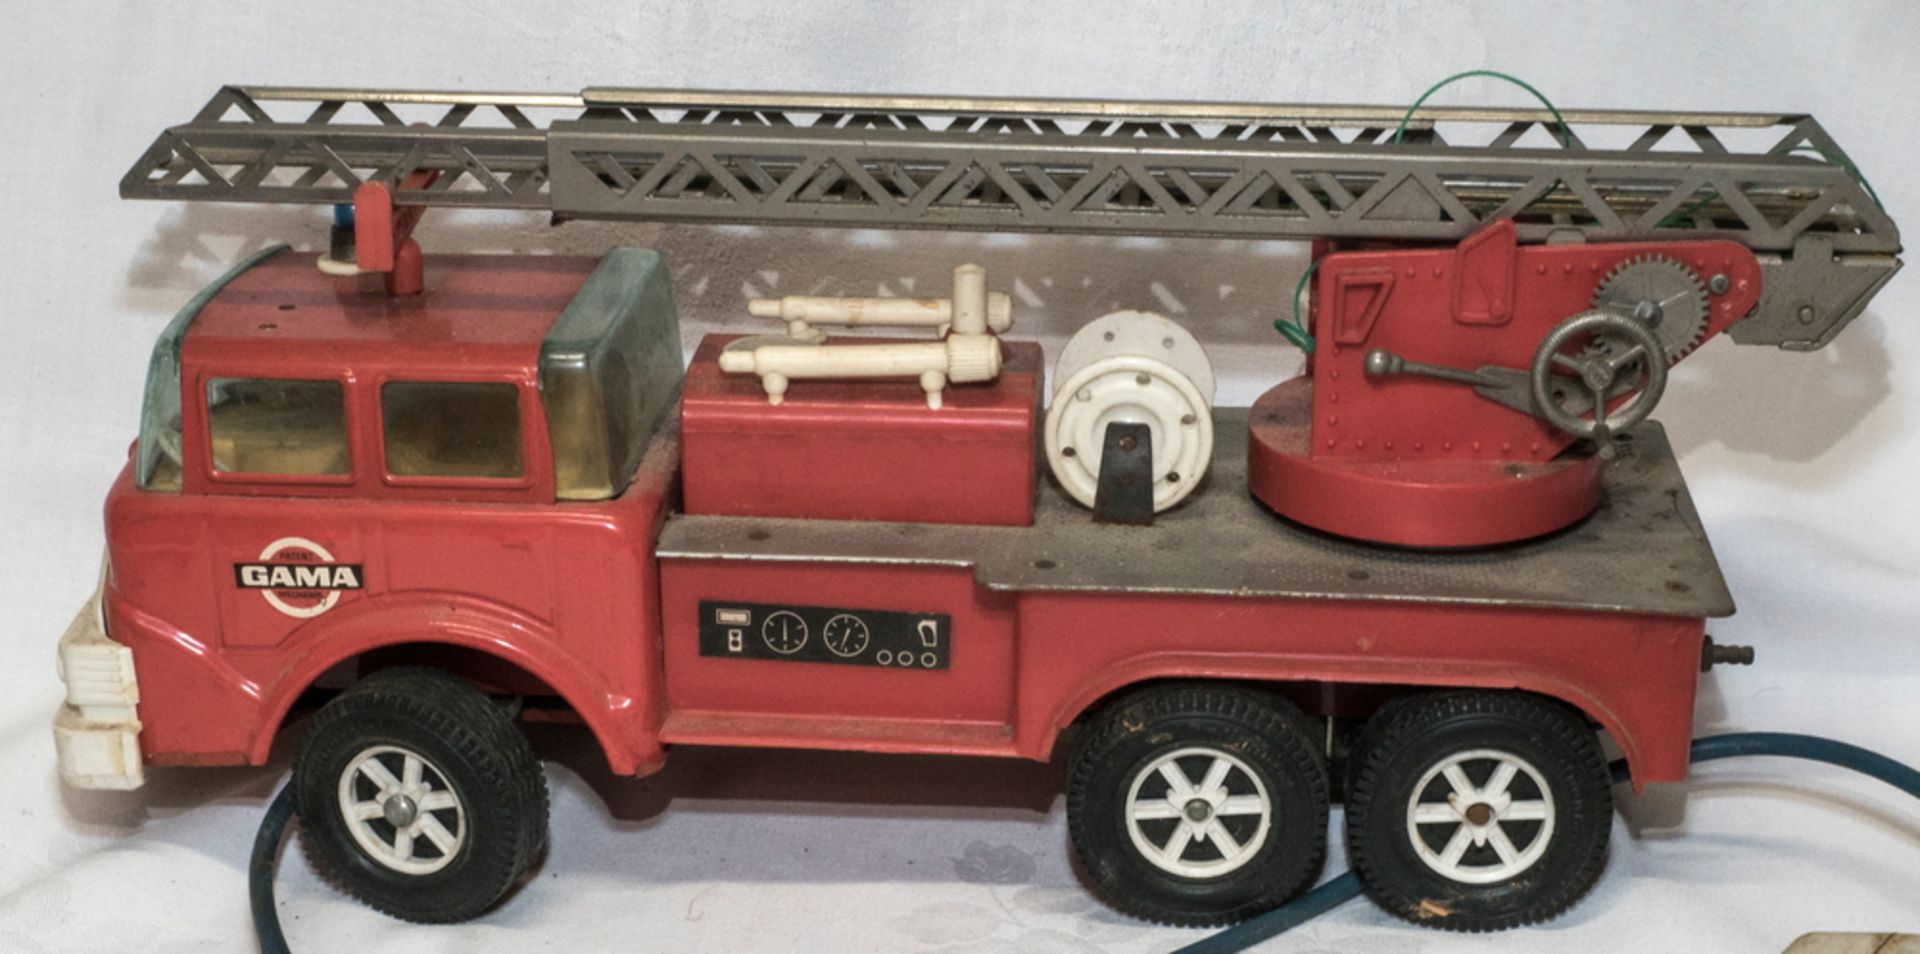 Gama Feuerwehrauto mit Fernbedienung. Nicht komplett. Länge: ca. 32 cm. Funktion nicht geprüft. - Image 3 of 5